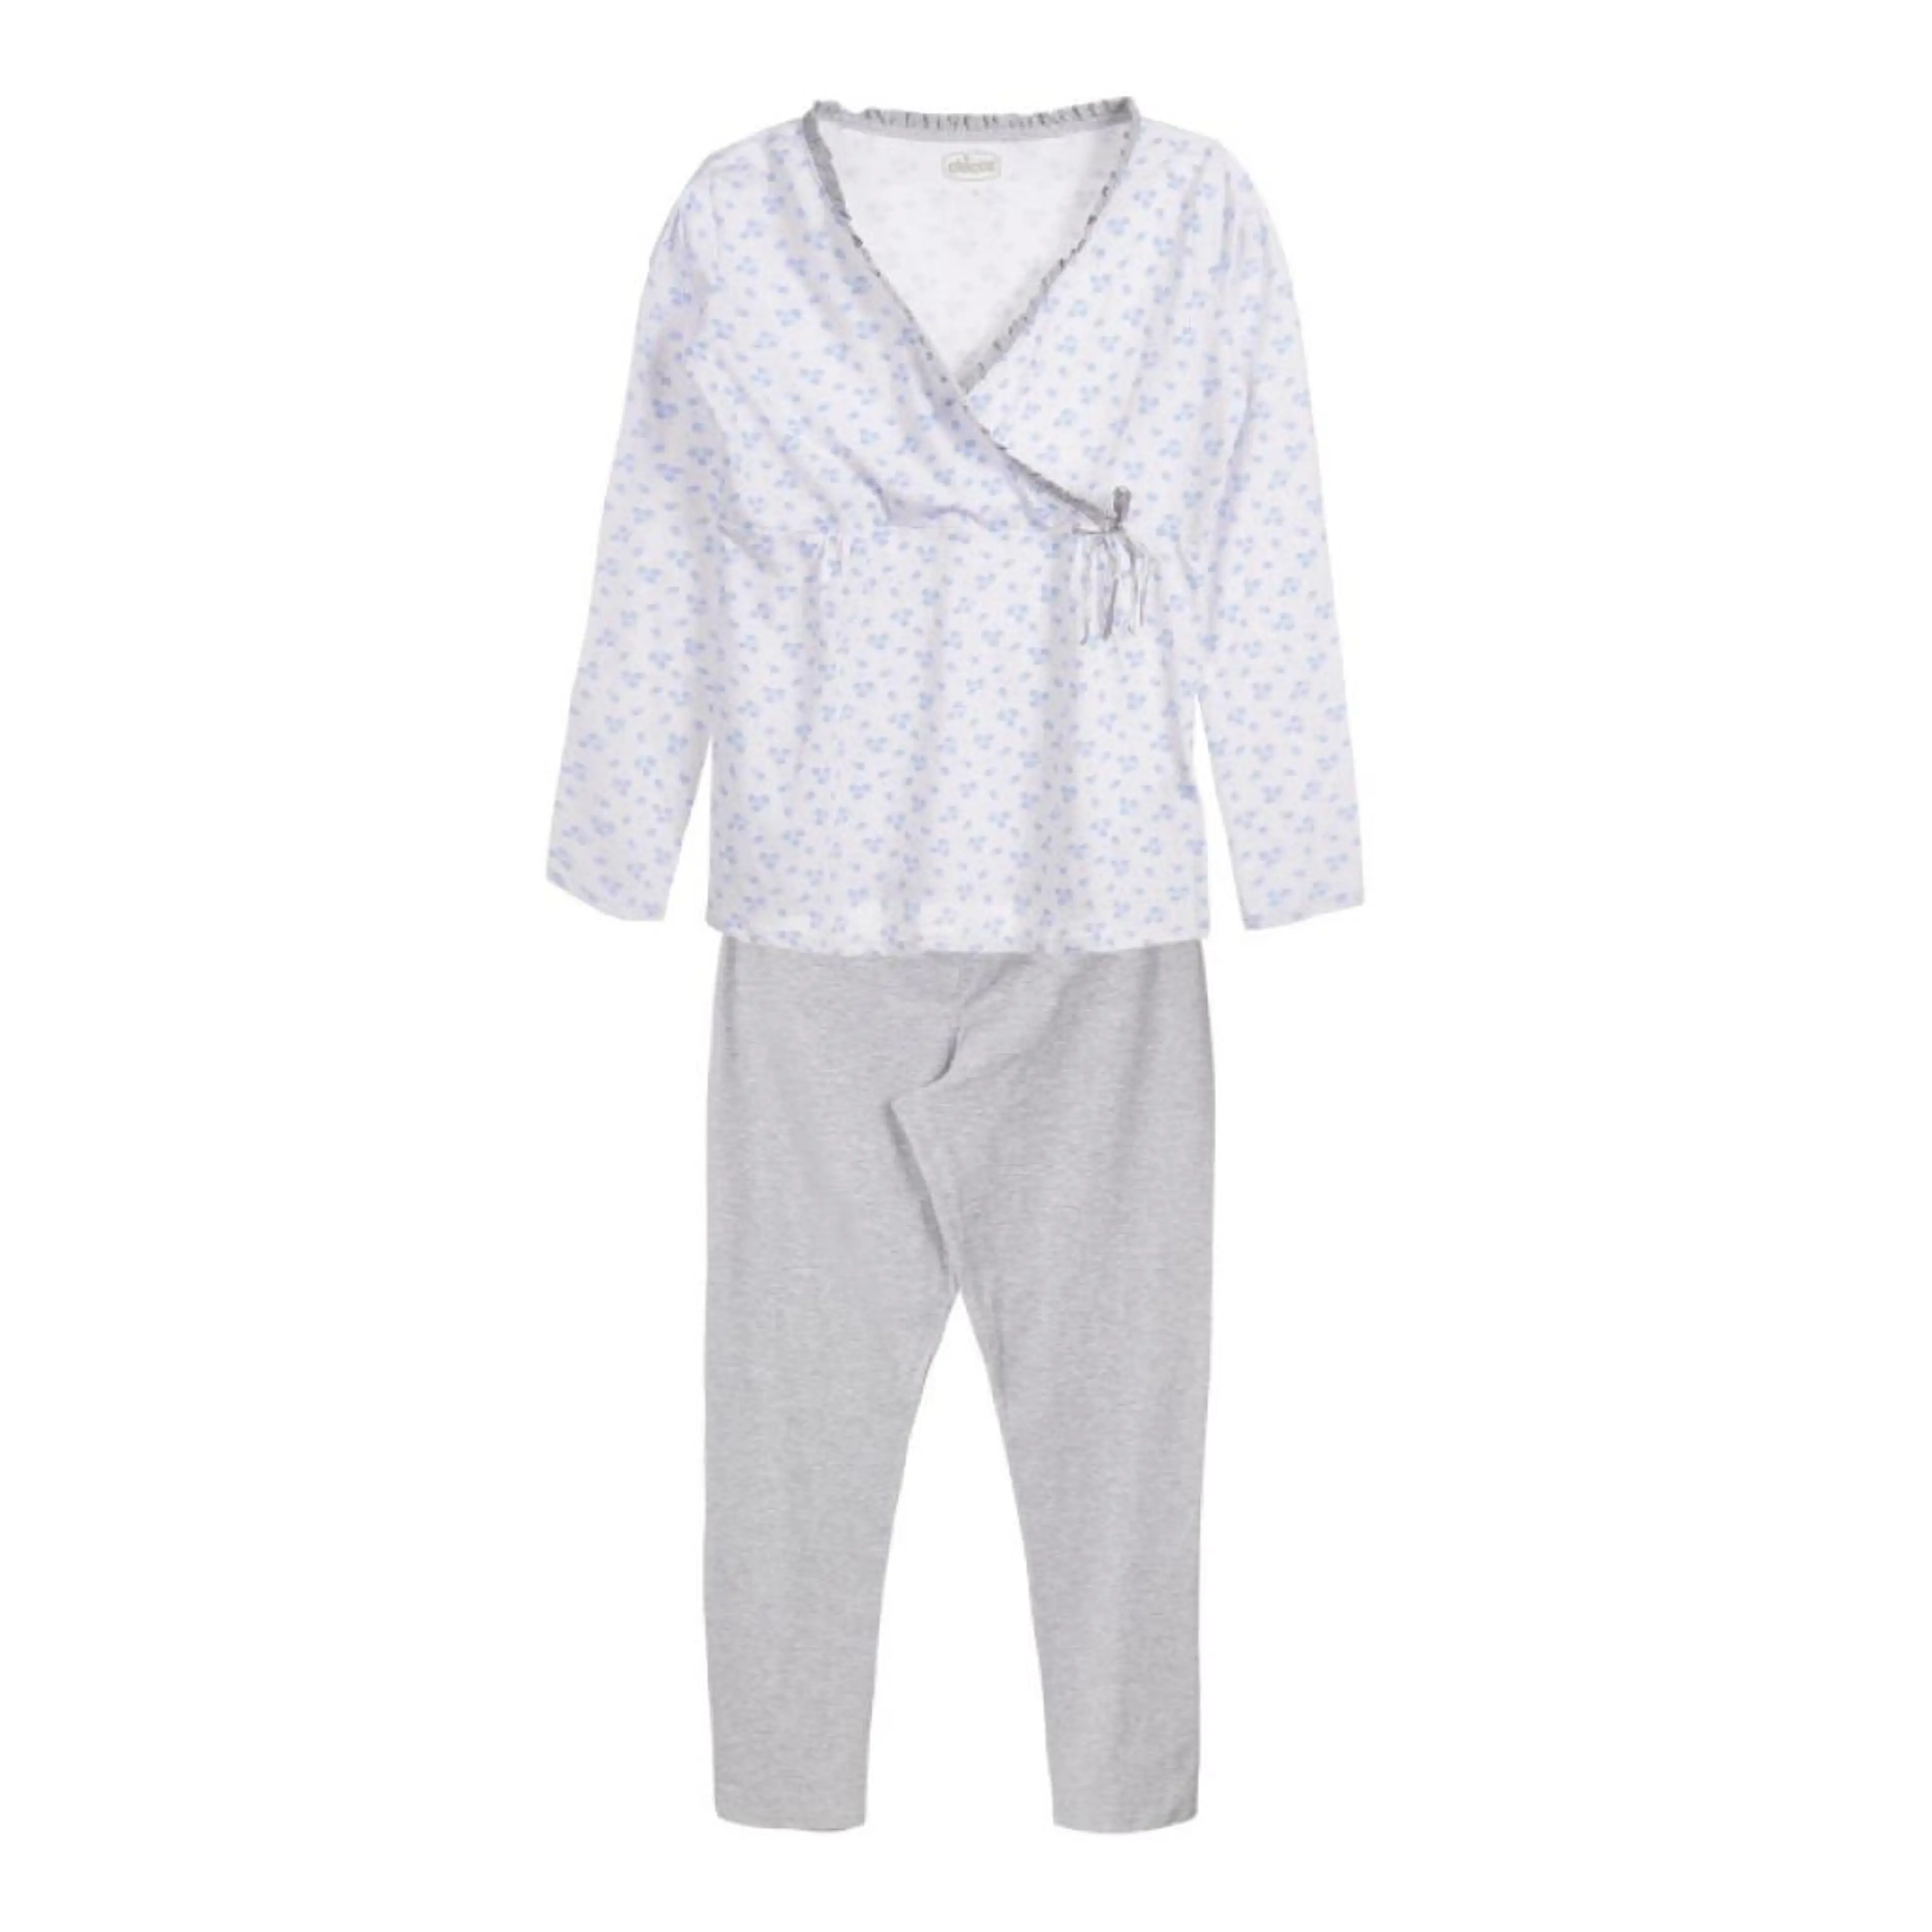 Памучна пижама за бременни и кърмачки в бяло и сиво